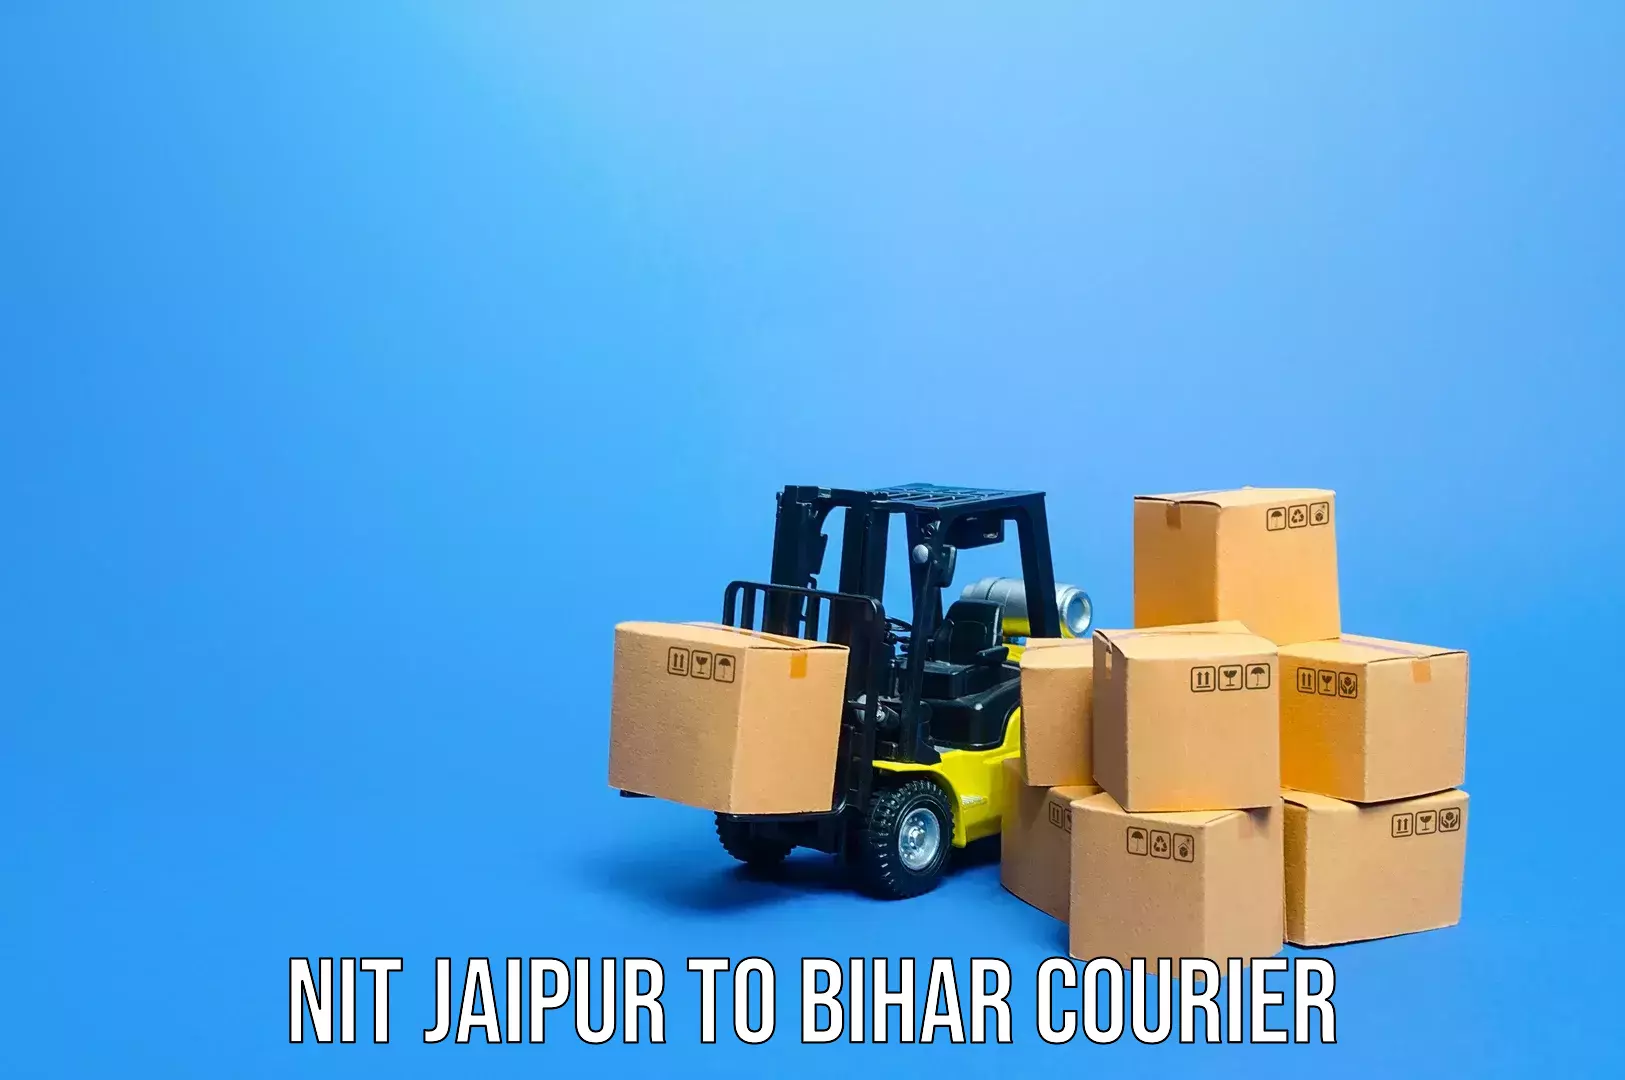 Luggage shipping planner NIT Jaipur to Bihar